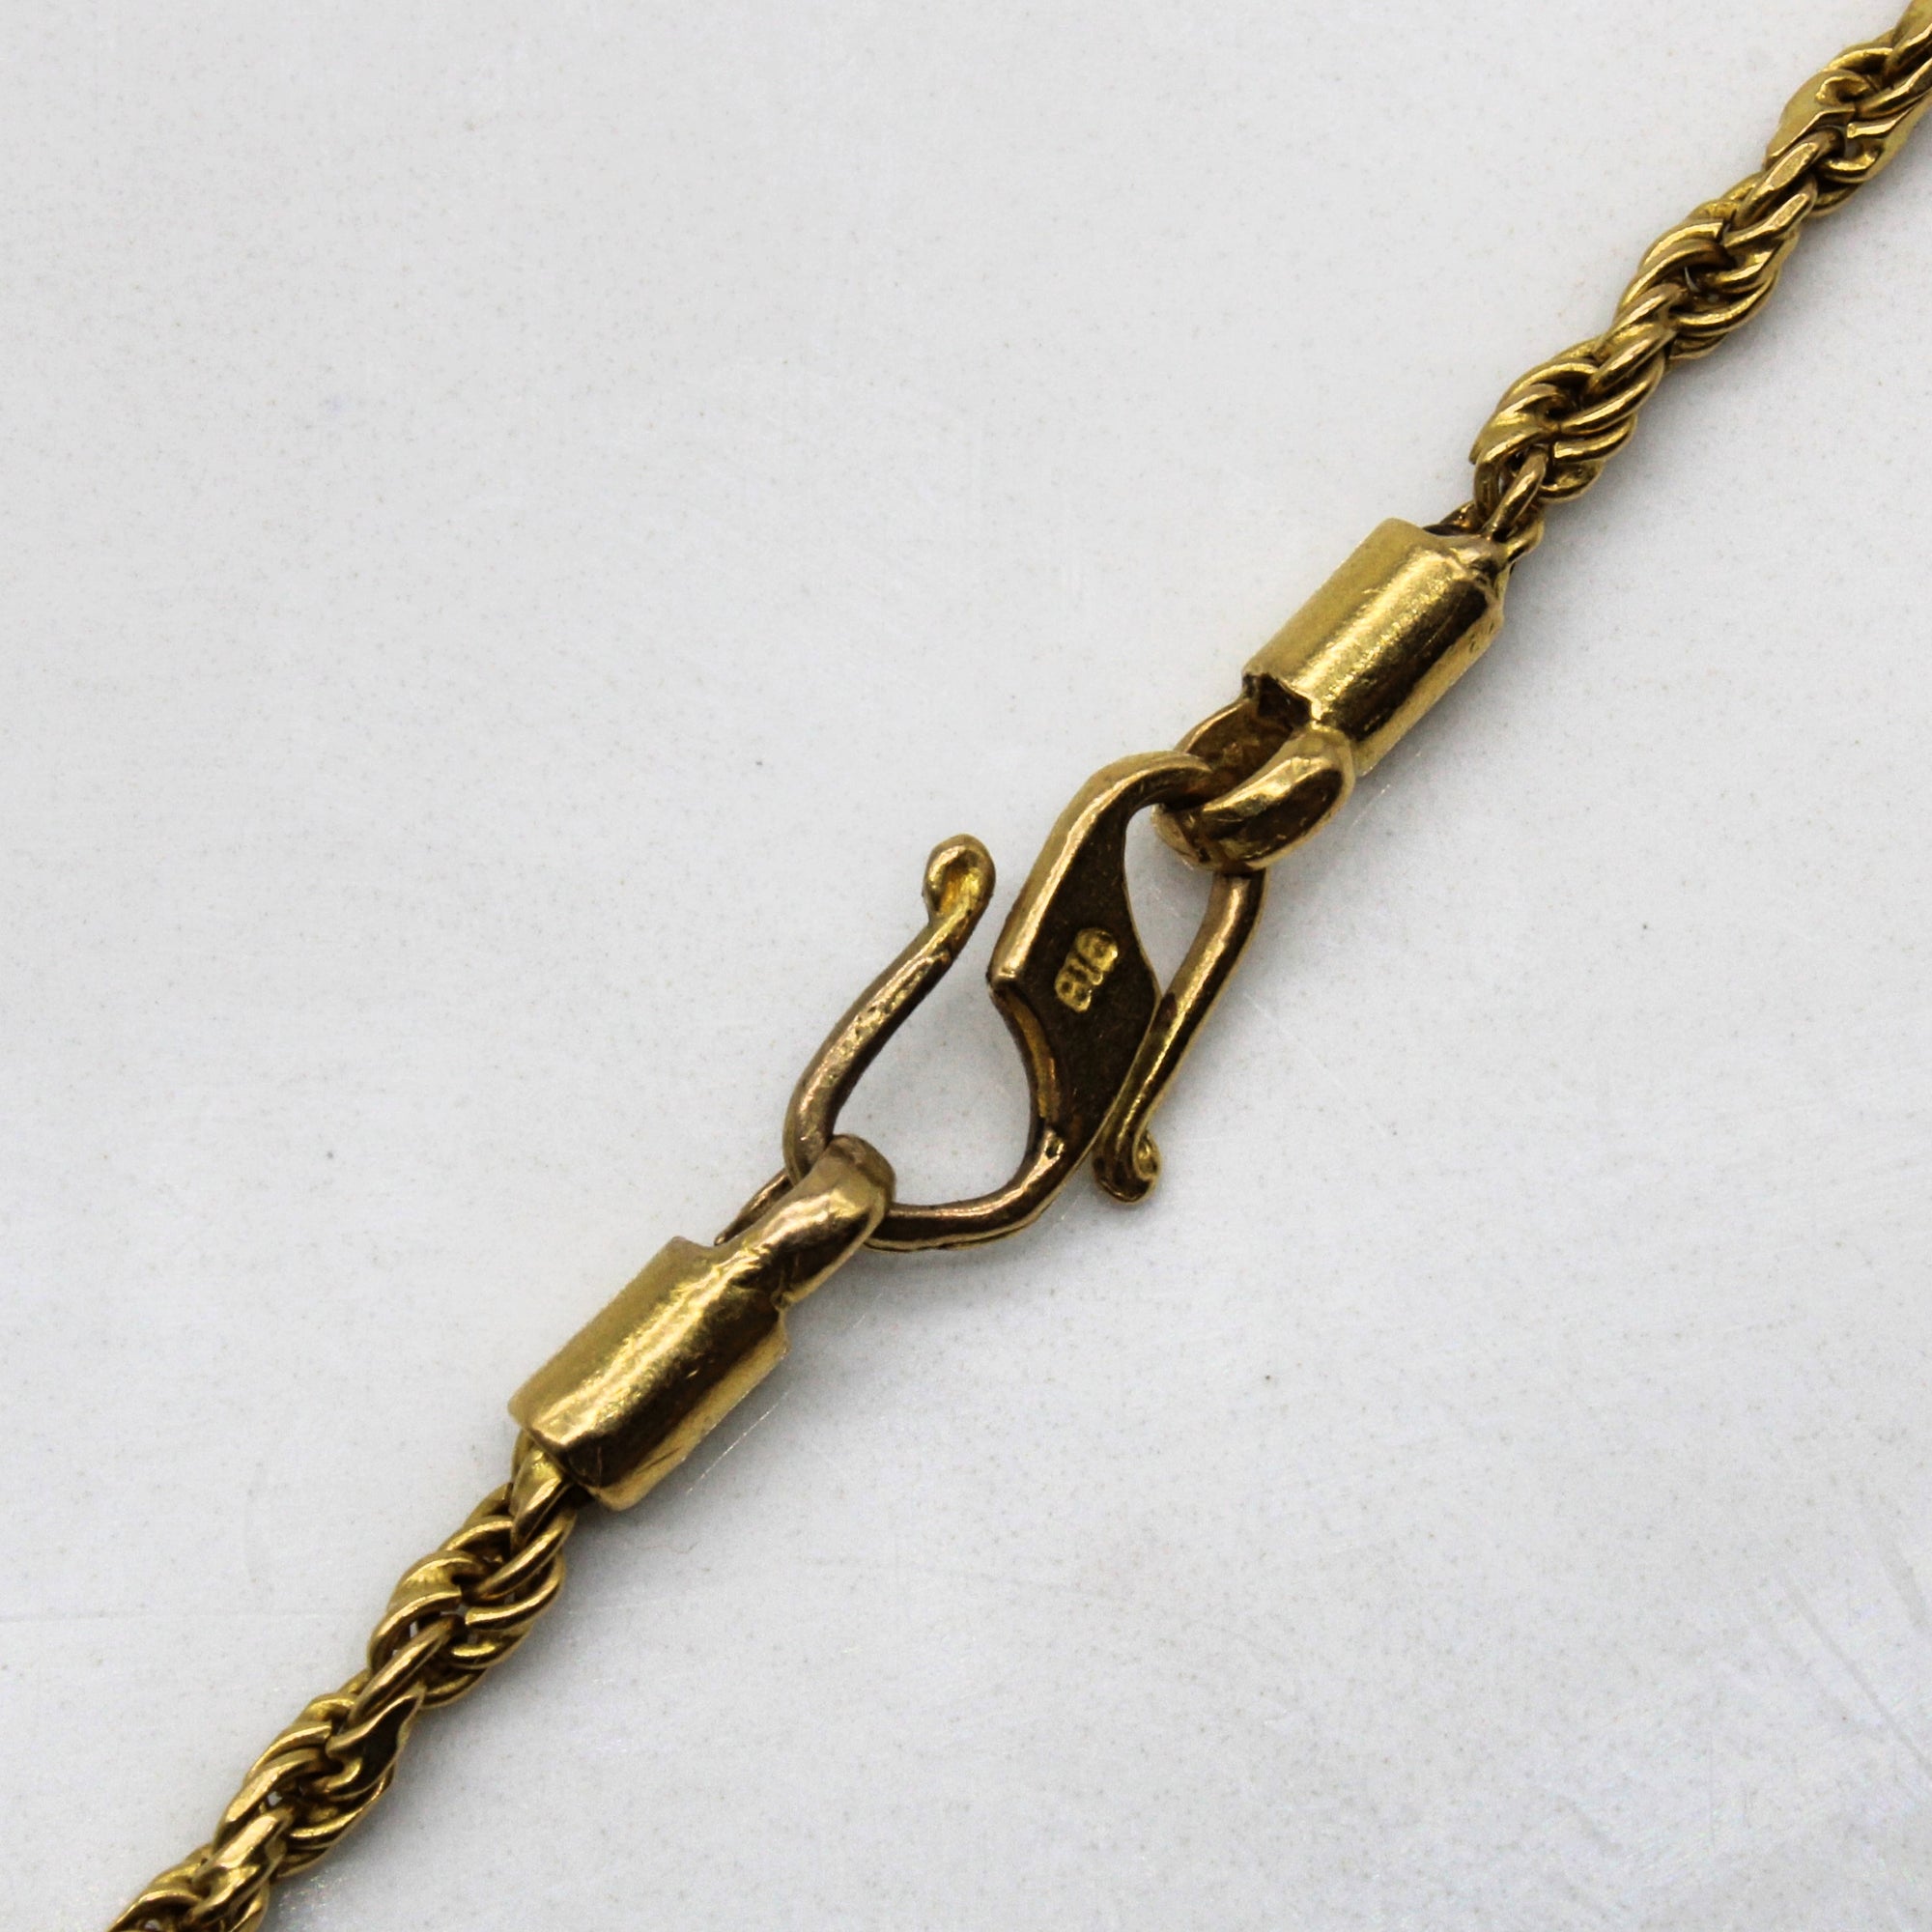 22k Yellow Gold Rope Chain | 24